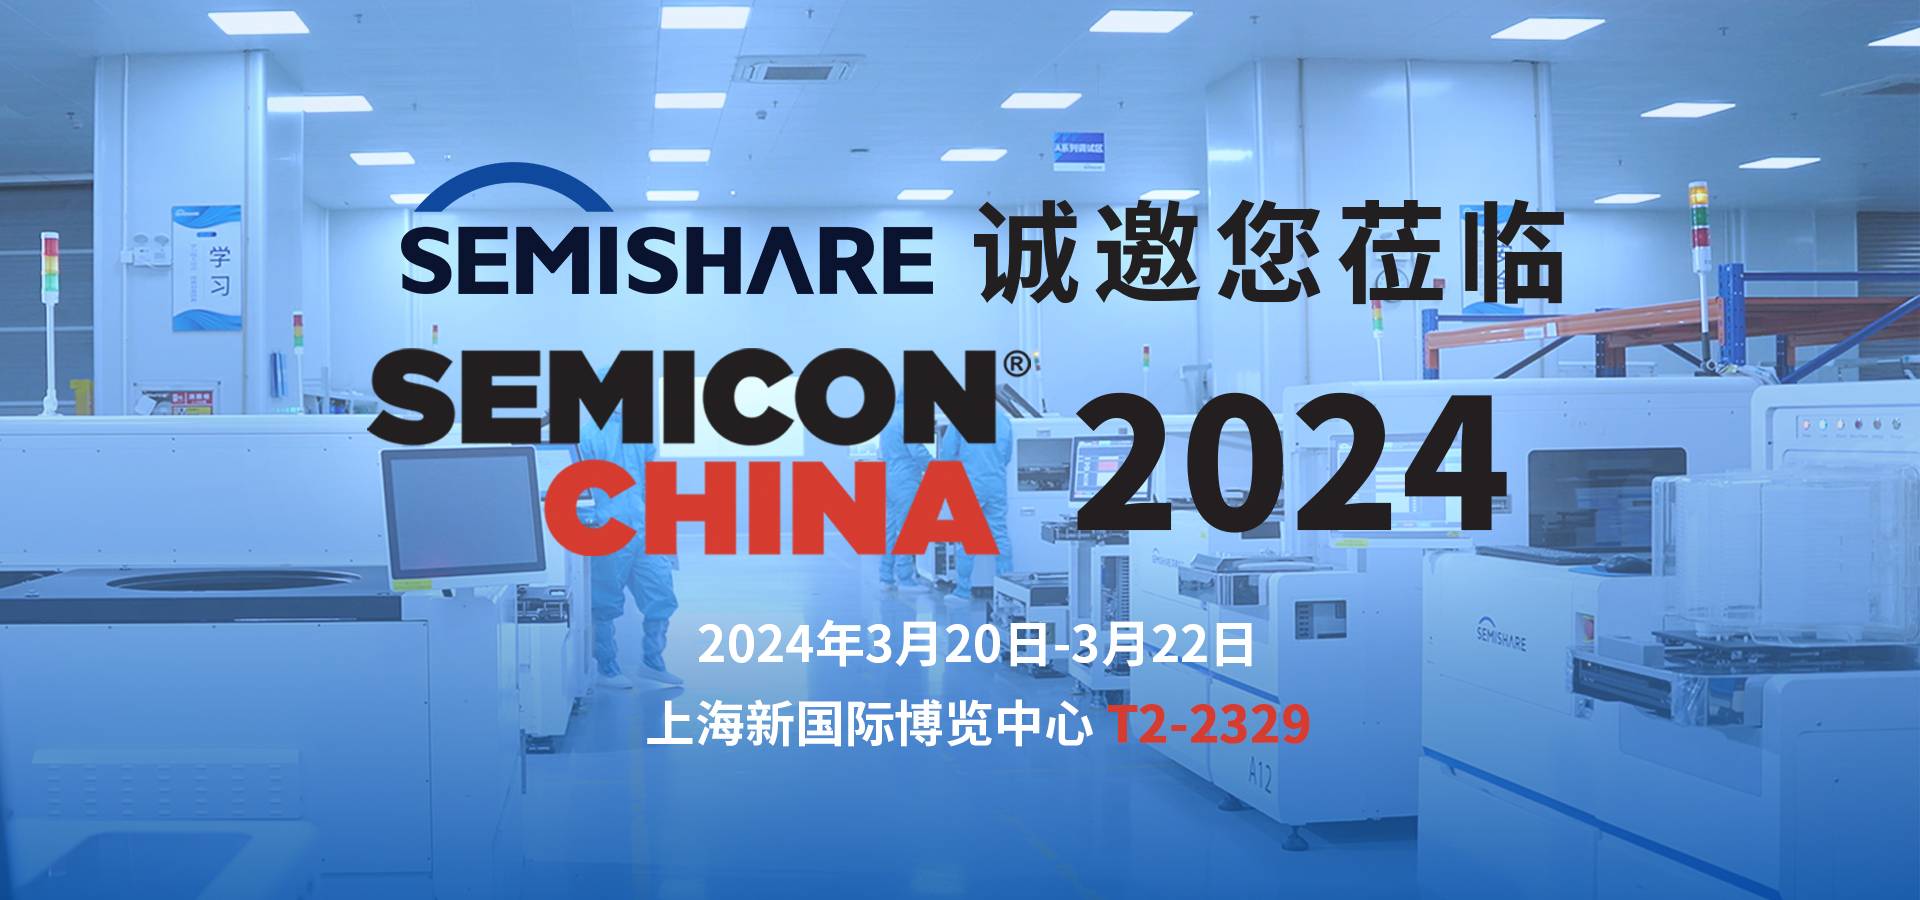 威斯尼斯人诚邀您莅临SEMICON CHINA 2024，共同探讨前沿晶圆测试解决方案！